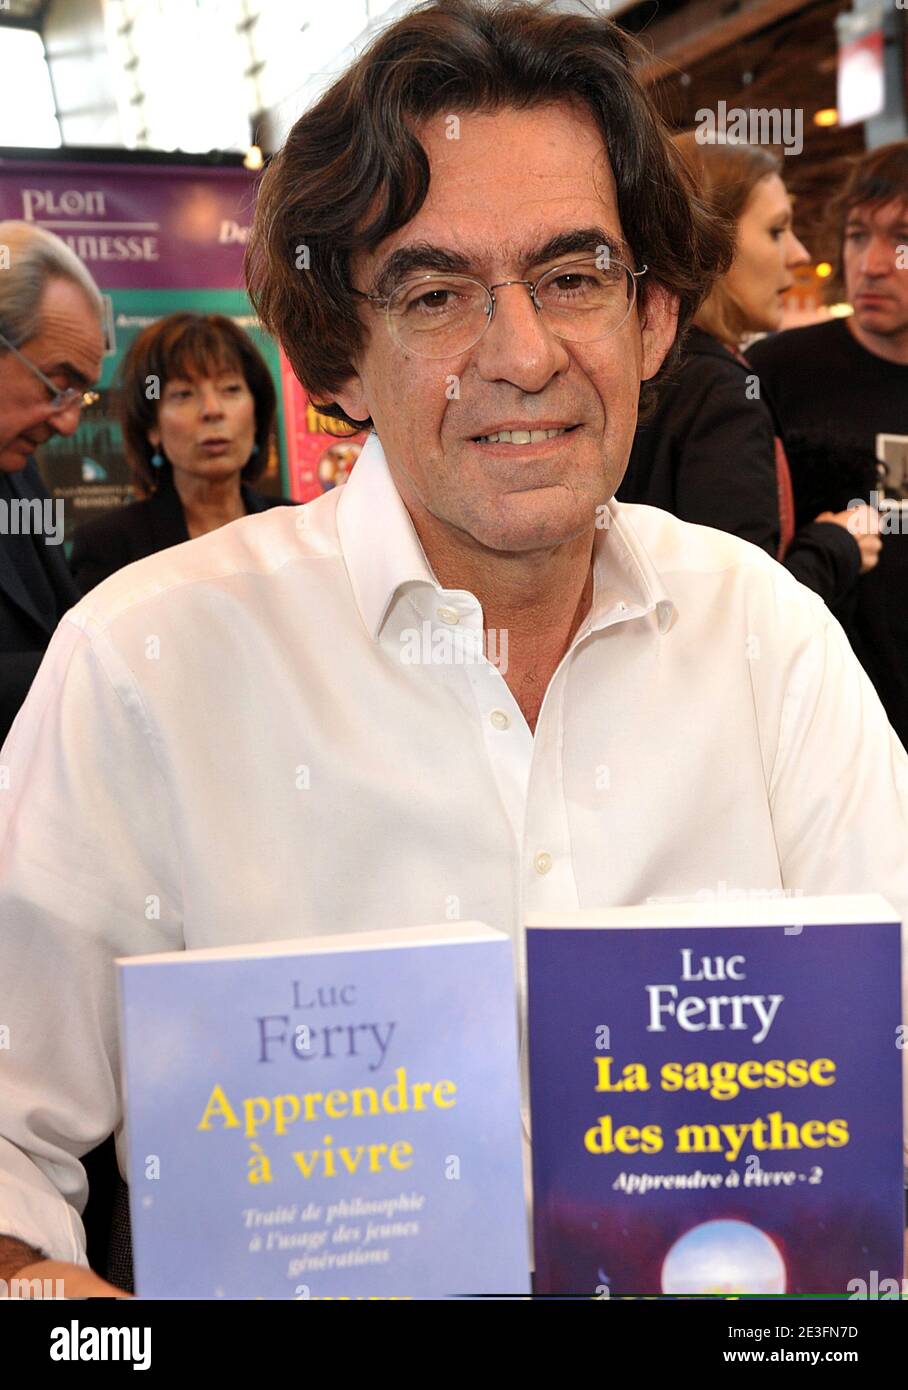 Luc Ferry poses during the Paris Book Fair 'Le Salon Du Livre' held at Porte de Versailles in Paris, France, on March 15, 2009. Photo by Giancarlo Gorassini/ABACAPRESS.COM Stock Photo